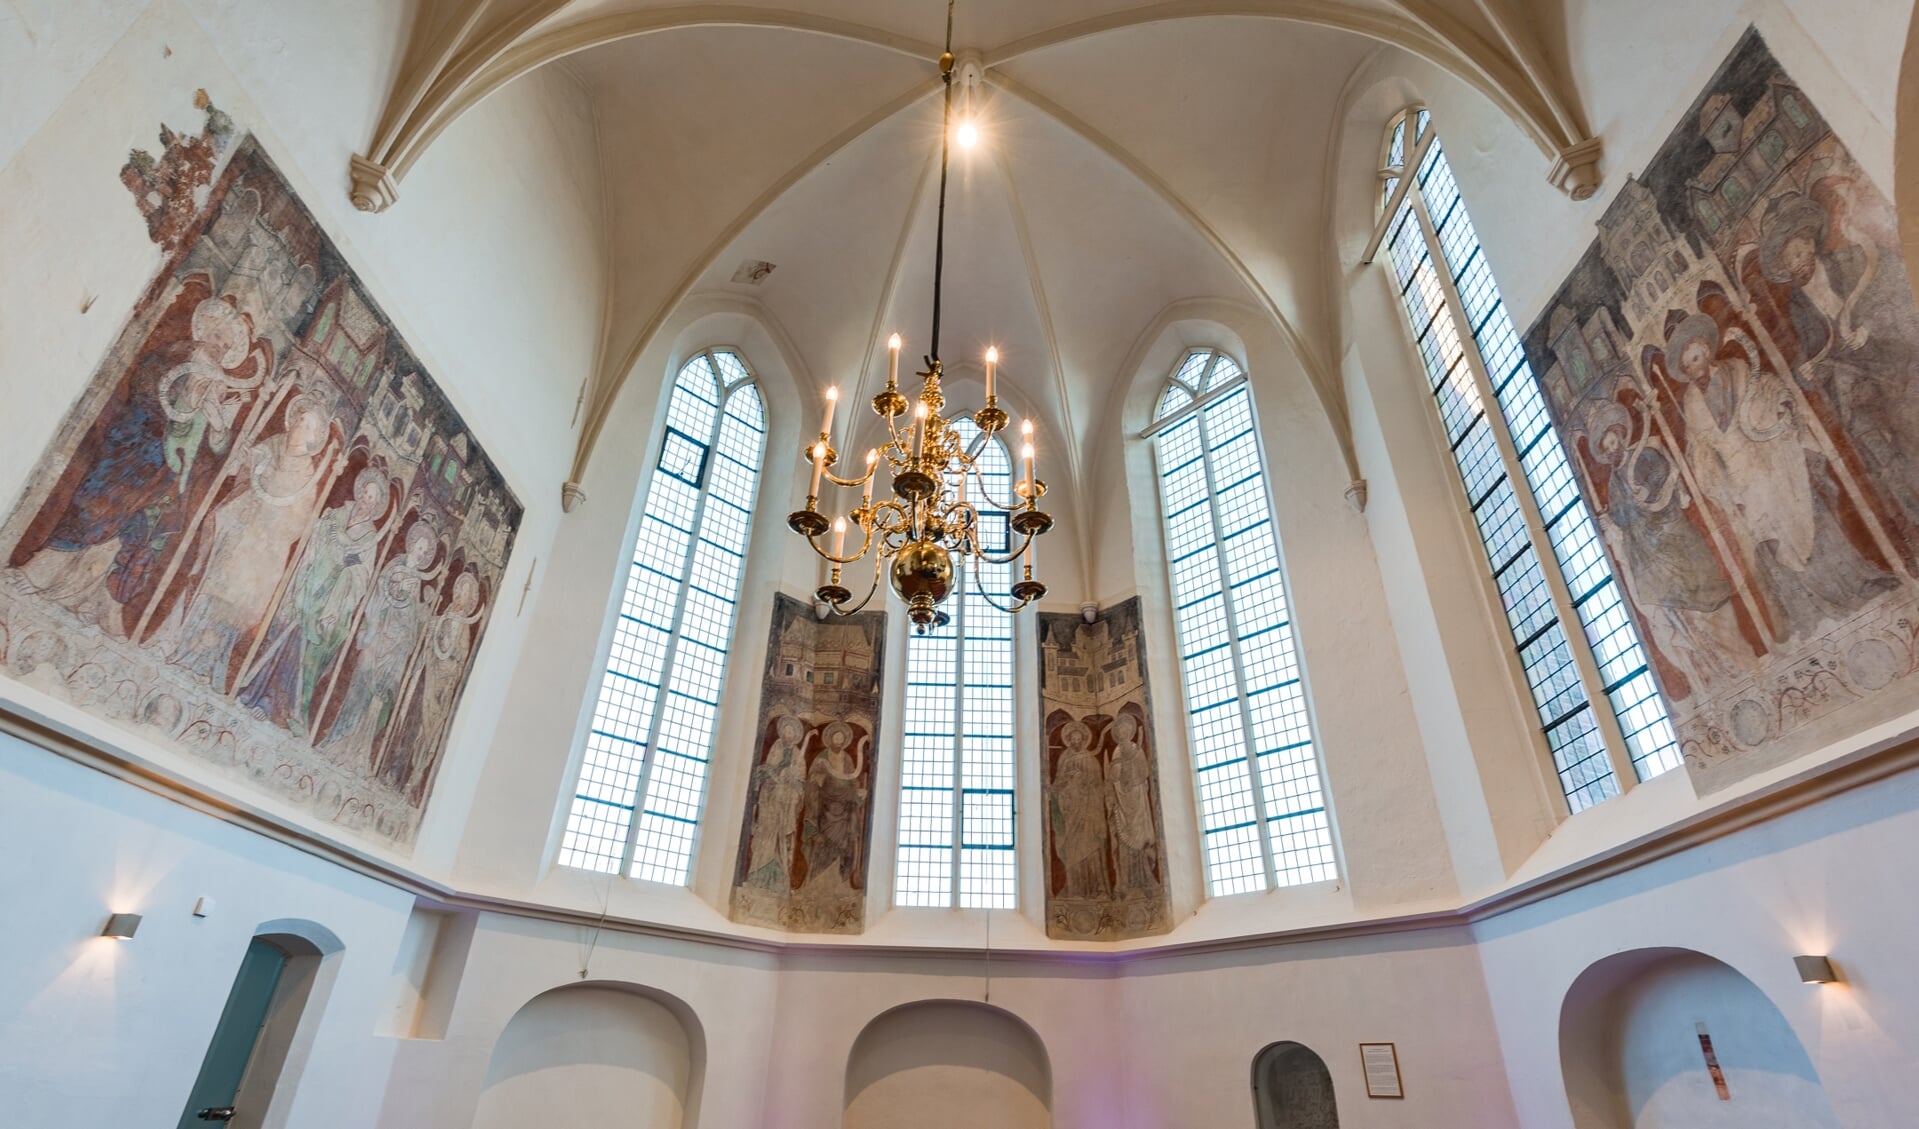 Remigiuskerk in Hengelo Gld. op zaterdag opengesteld voor bezichtiging. Foto: PR